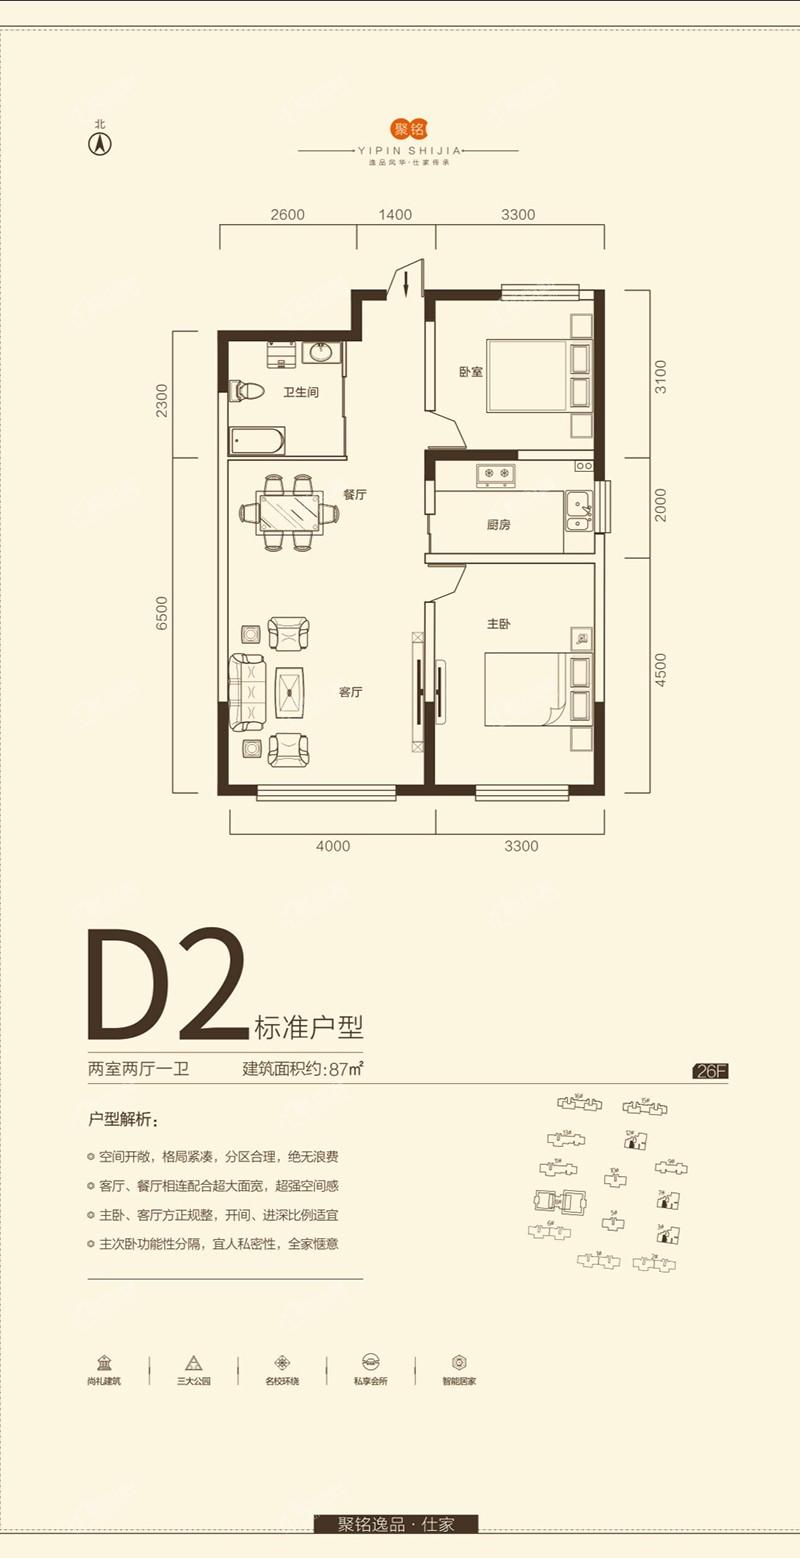 D2户型-两室两厅一卫-87平米